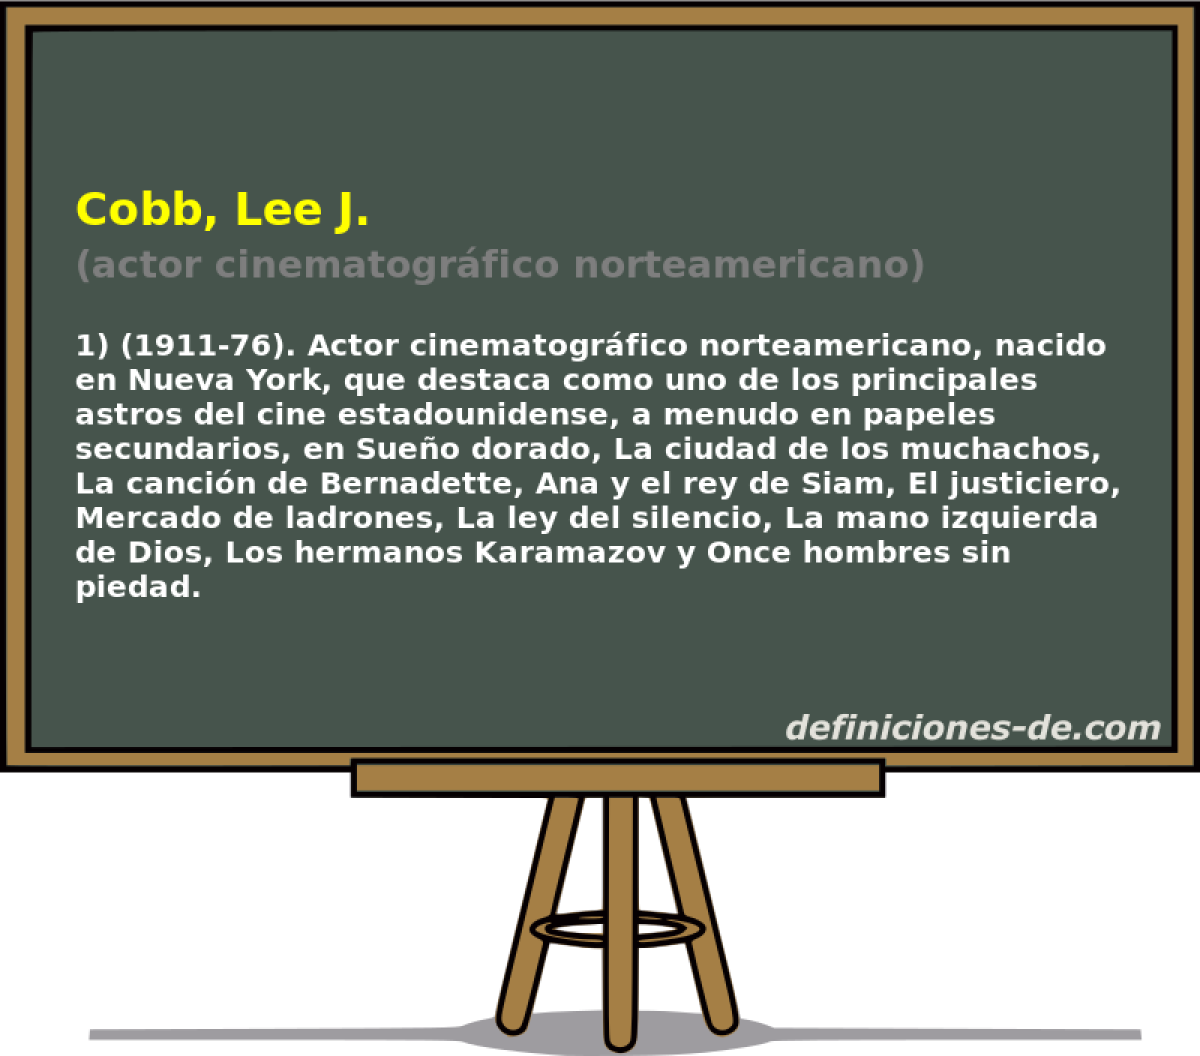 Cobb, Lee J. (actor cinematogrfico norteamericano)